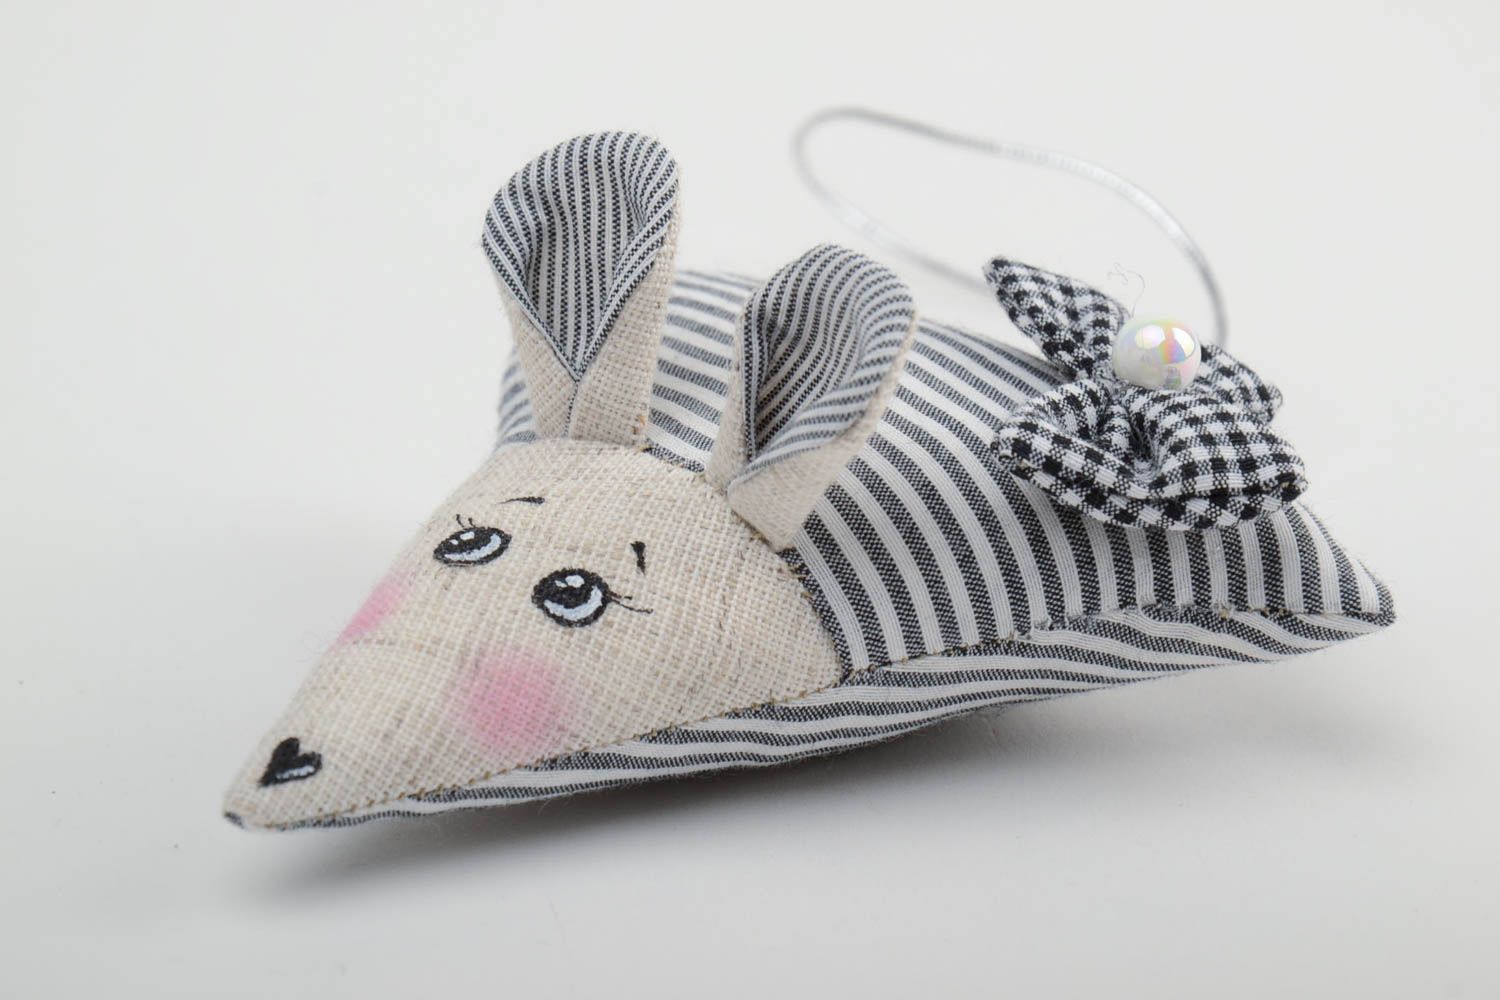 Интерьерная подвеска мышка из ткани игрушка для дома ручной работы милая фото 2